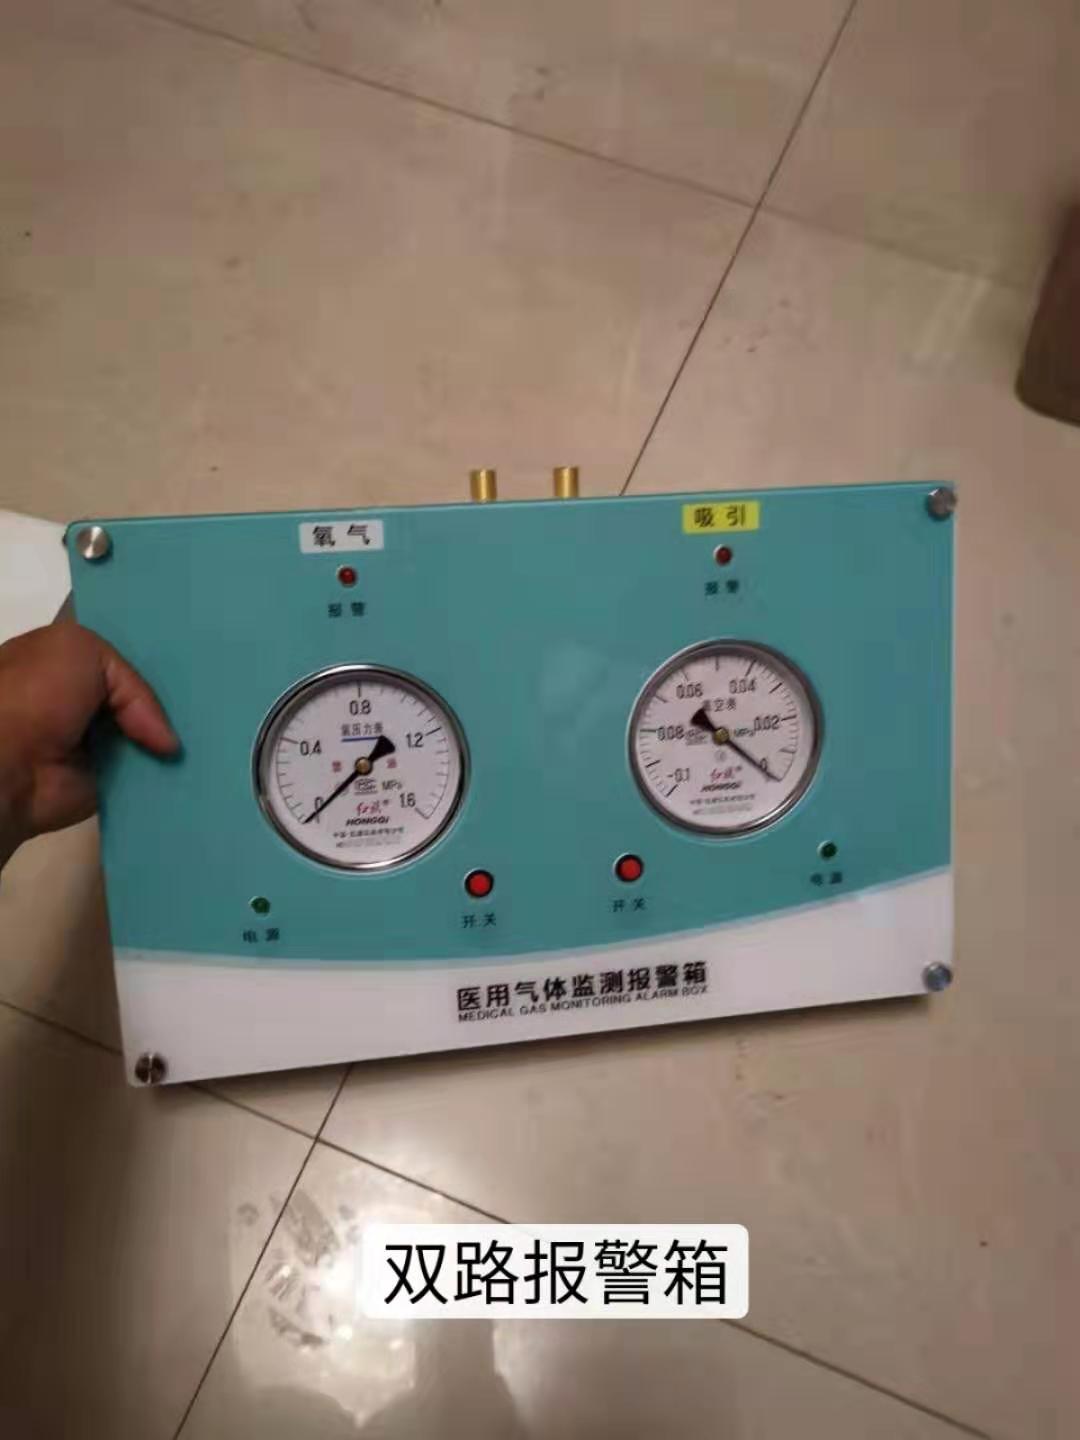 醫用氣體檢測報警箱廠家天朗科技:氣體檢測儀器是檢測自然環境中氣體的儀表設備